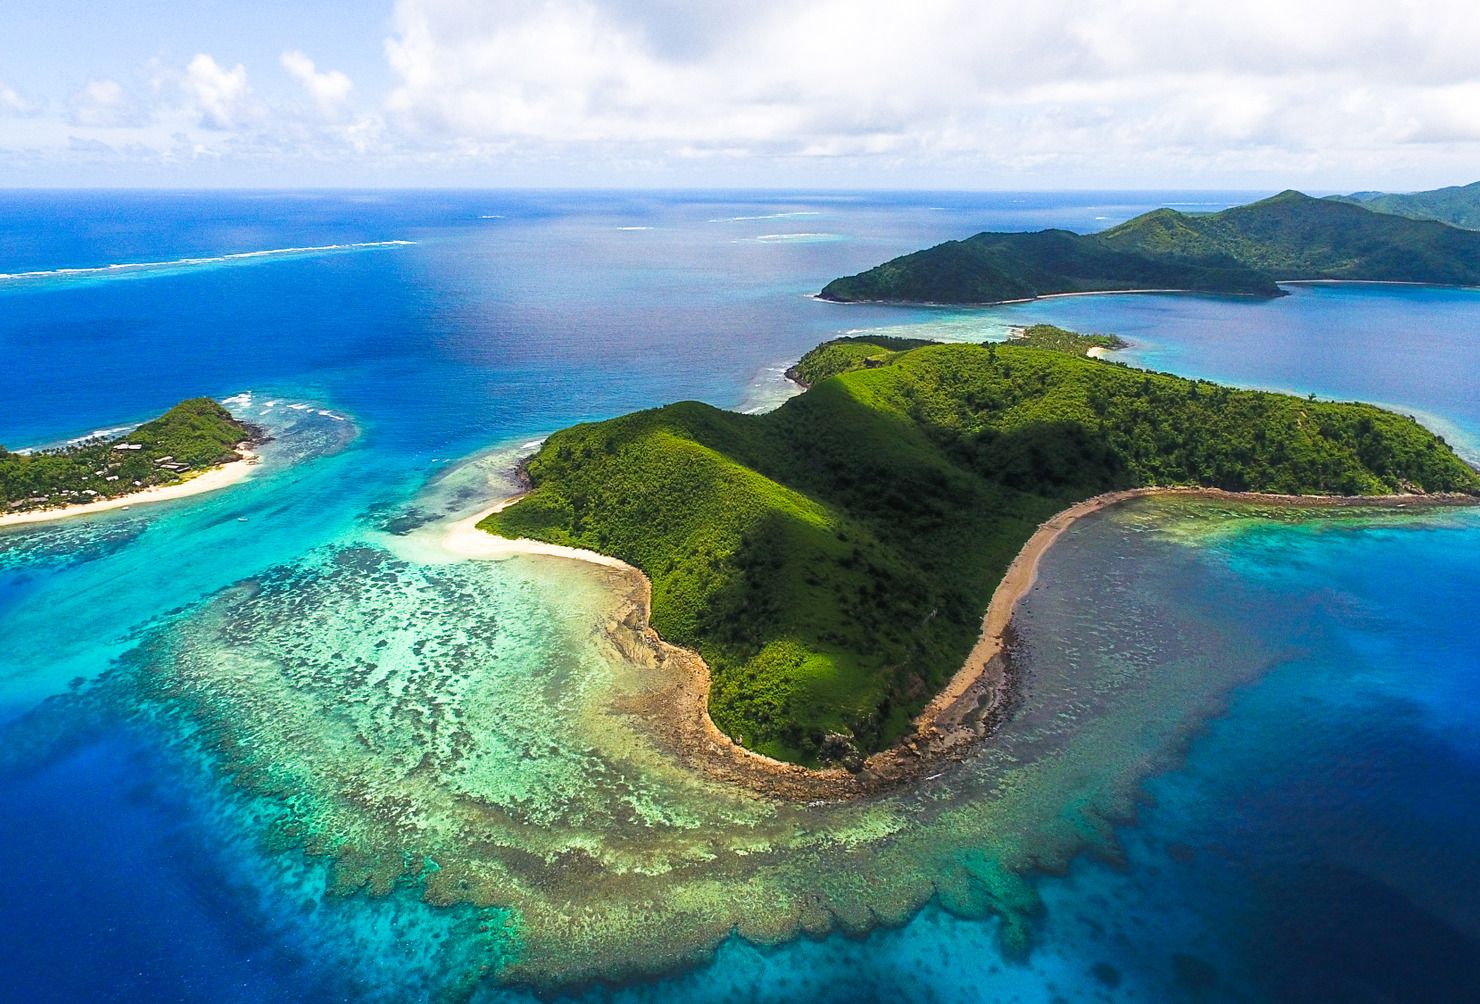 Южная часть тихого океана острова. Фиджи Маманука. Острова Ясава Фиджи. Острова Лау, Фиджи. Архипелаг Фиджи.